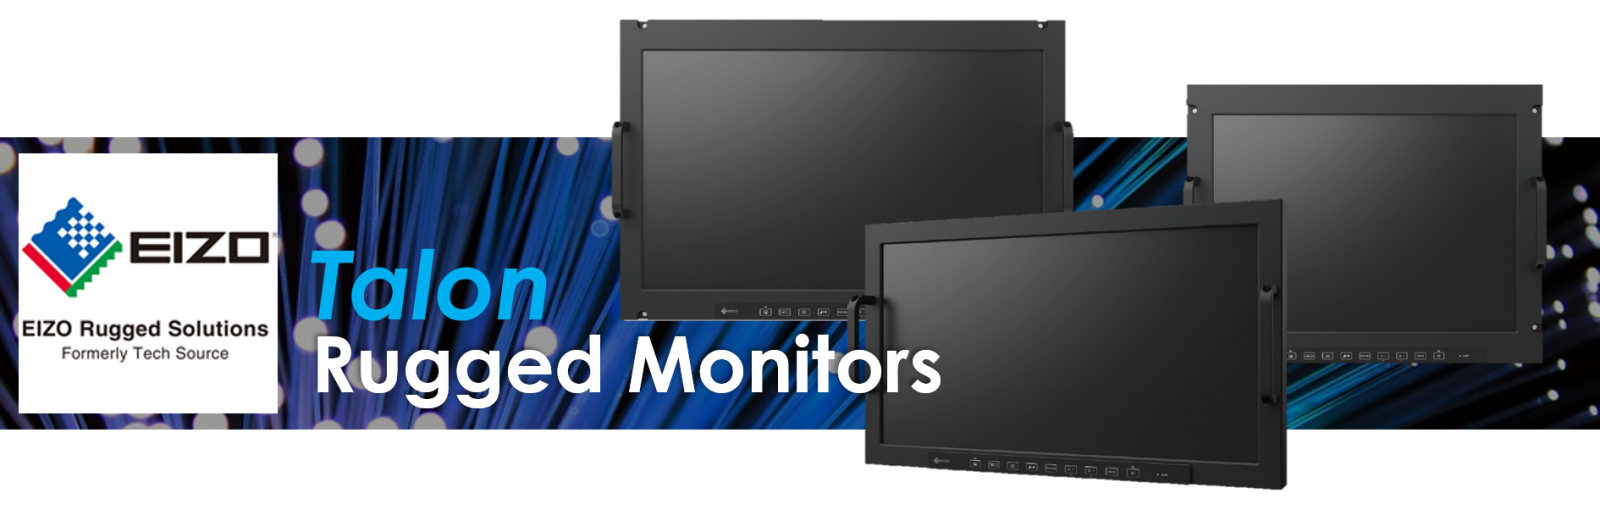 Talon Rugged Monitors from EIZO